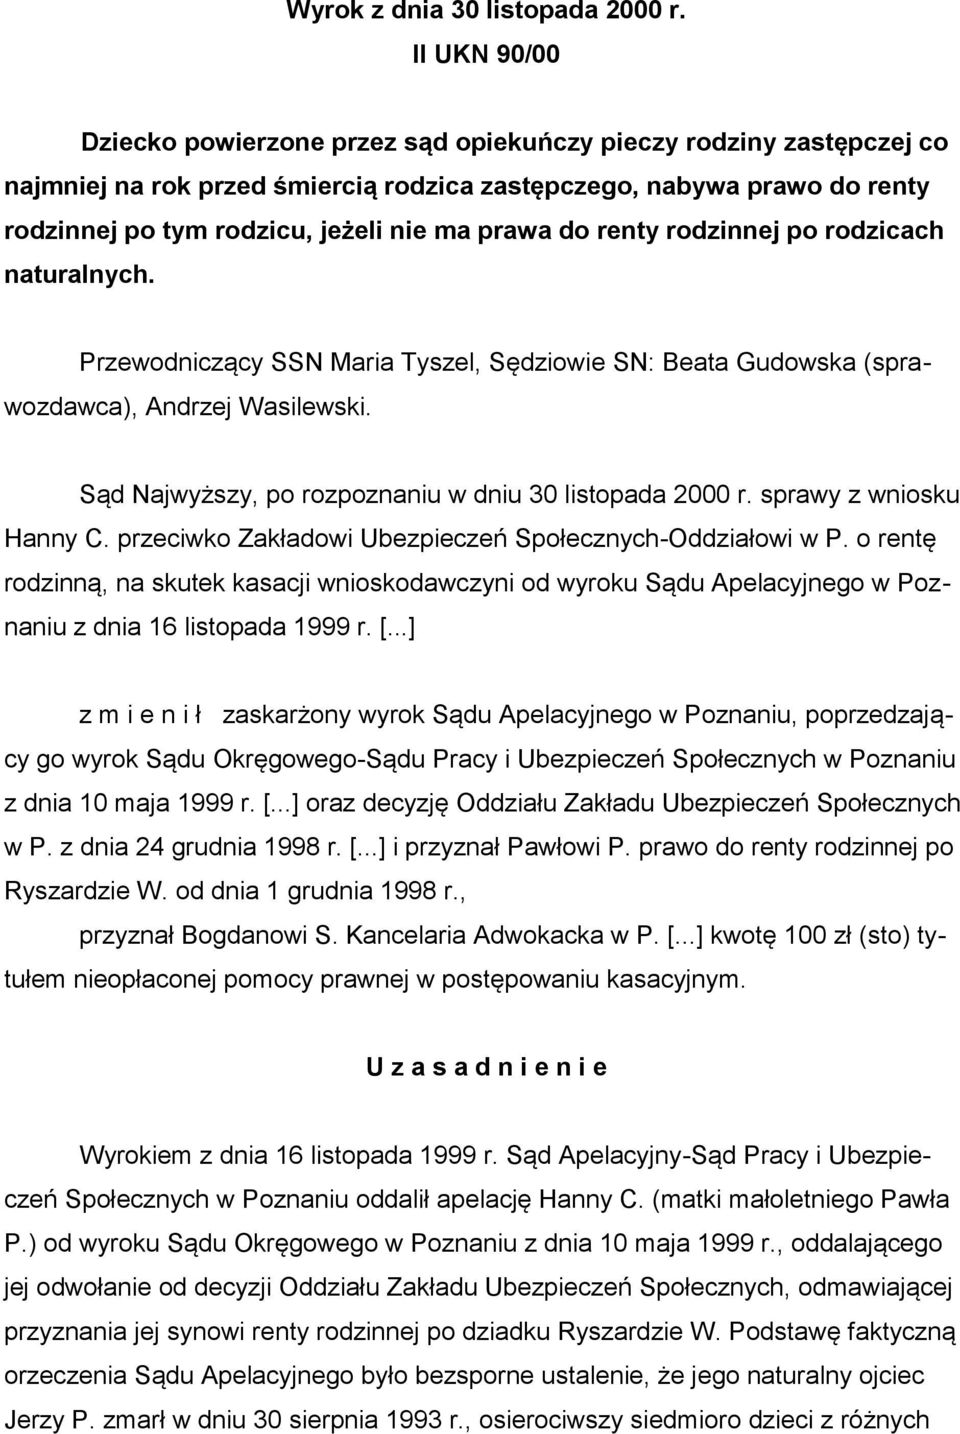 prawa do renty rodzinnej po rodzicach naturalnych. Przewodniczący SSN Maria Tyszel, Sędziowie SN: Beata Gudowska (sprawozdawca), Andrzej Wasilewski.